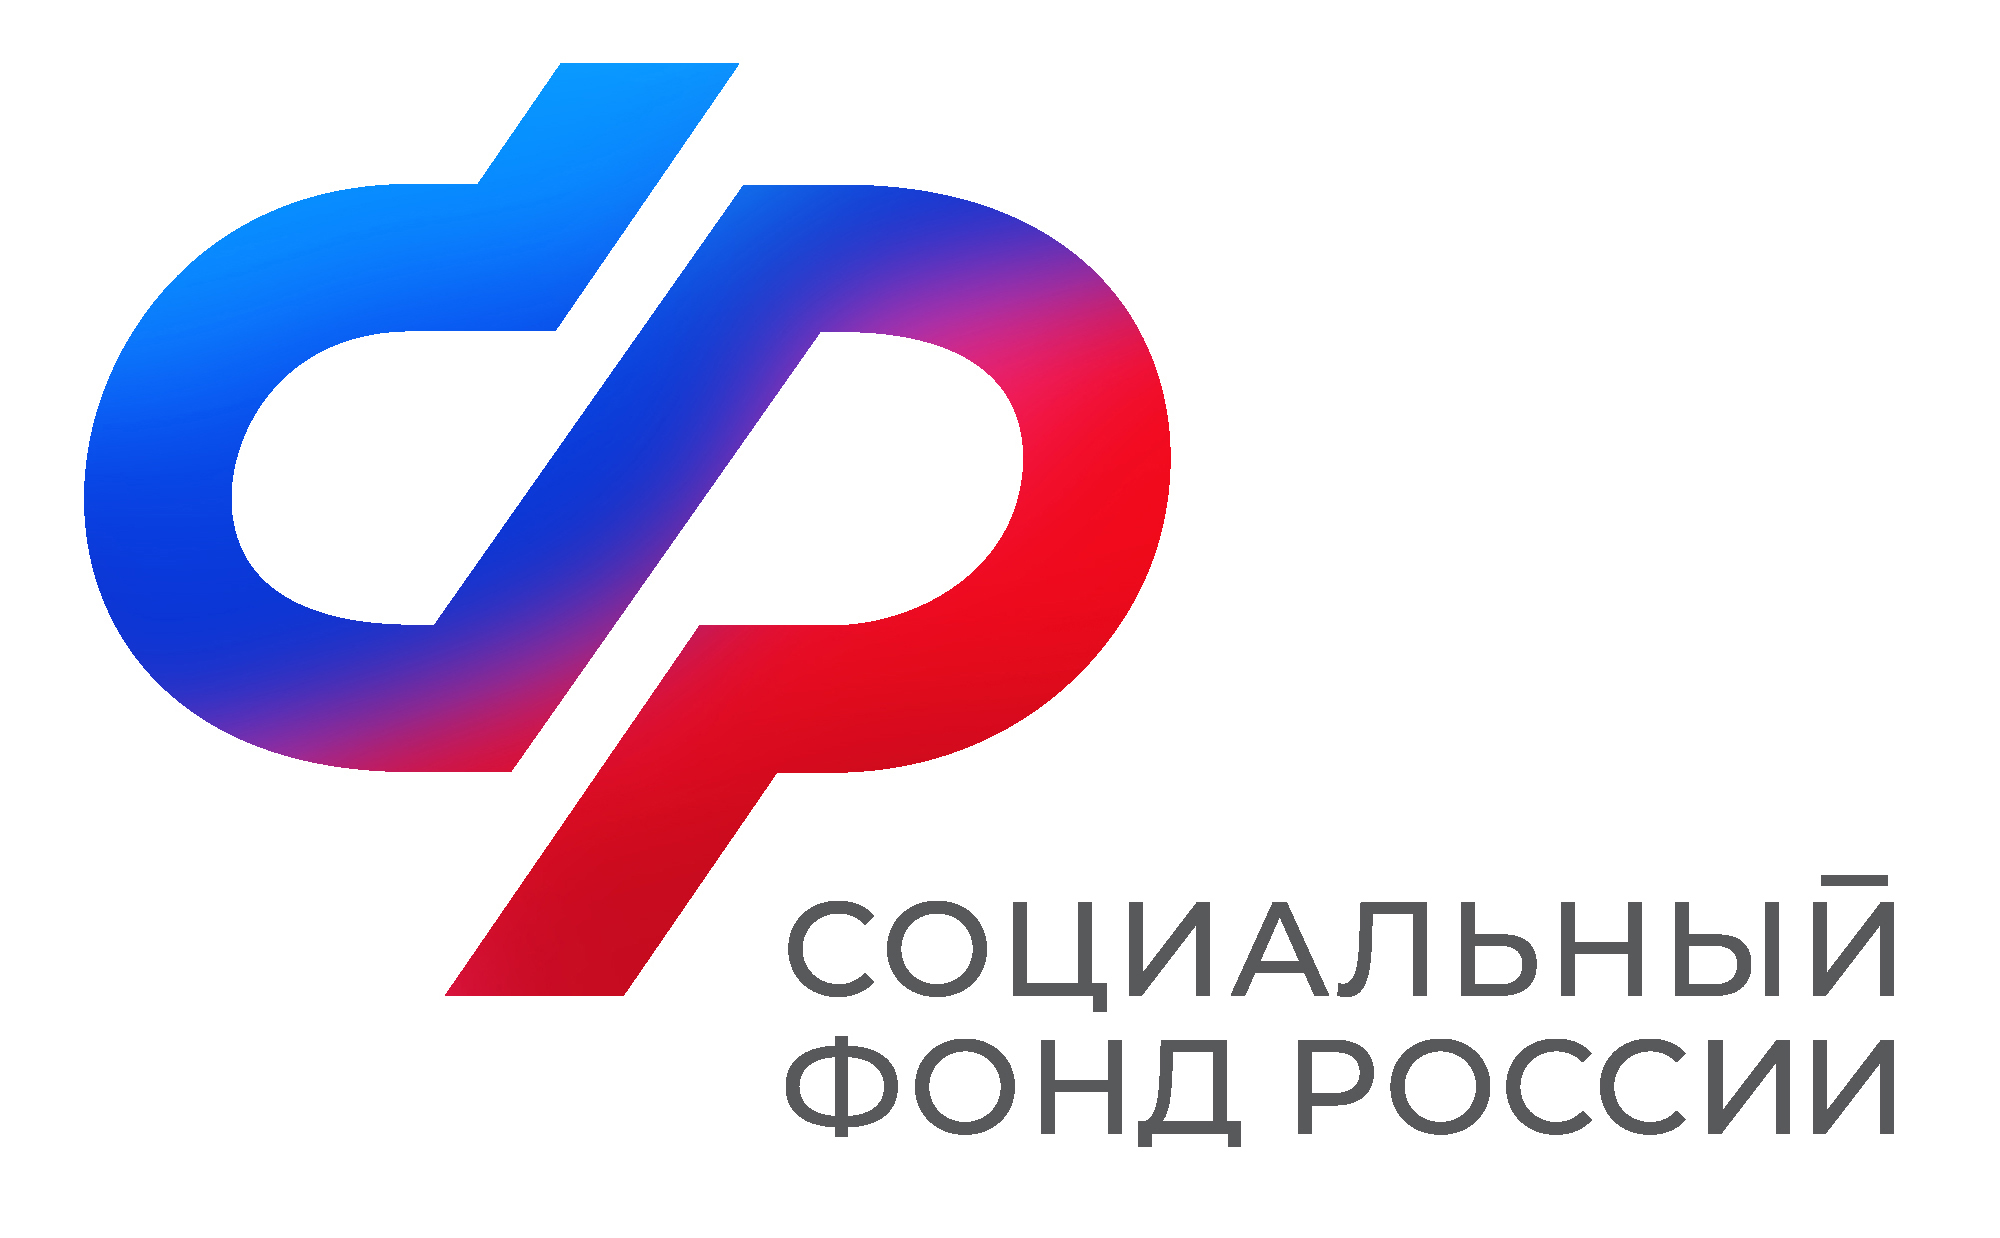 Воронежцы могут получать заказные письма регионального отделения СФР через «Госпочту».